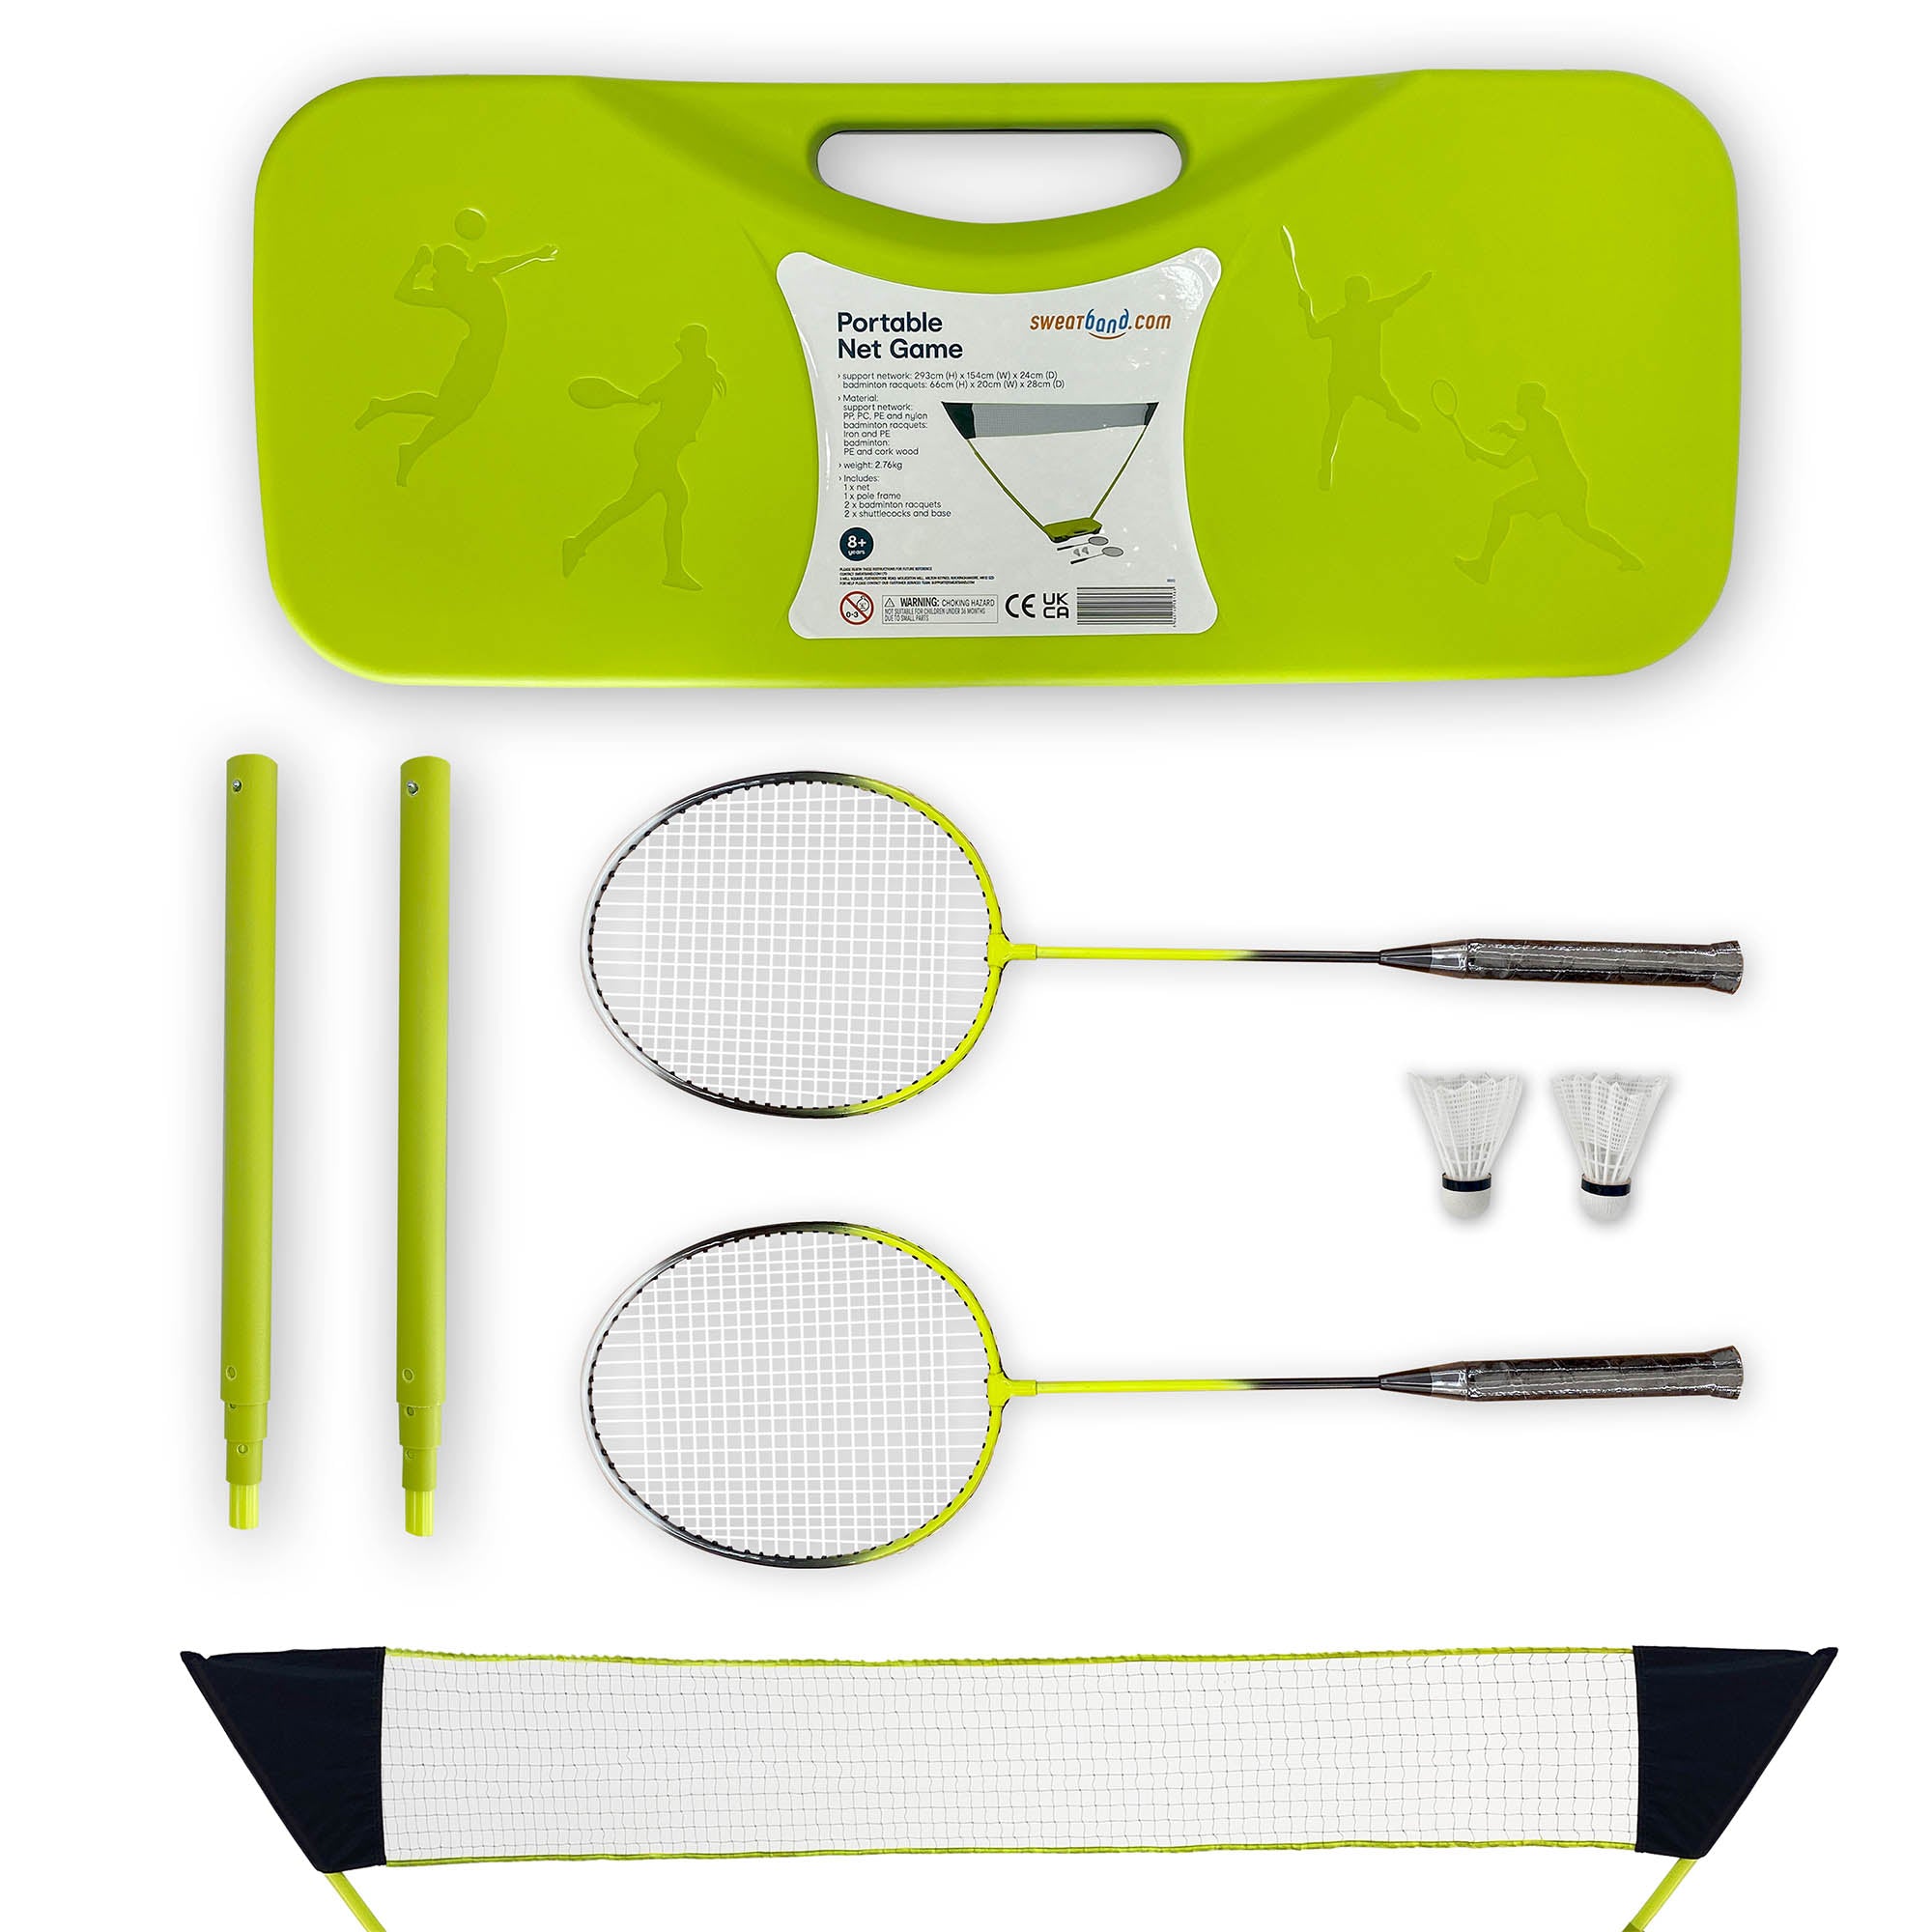 Sweatband.com 2 Player Portable Junior Badminton Set